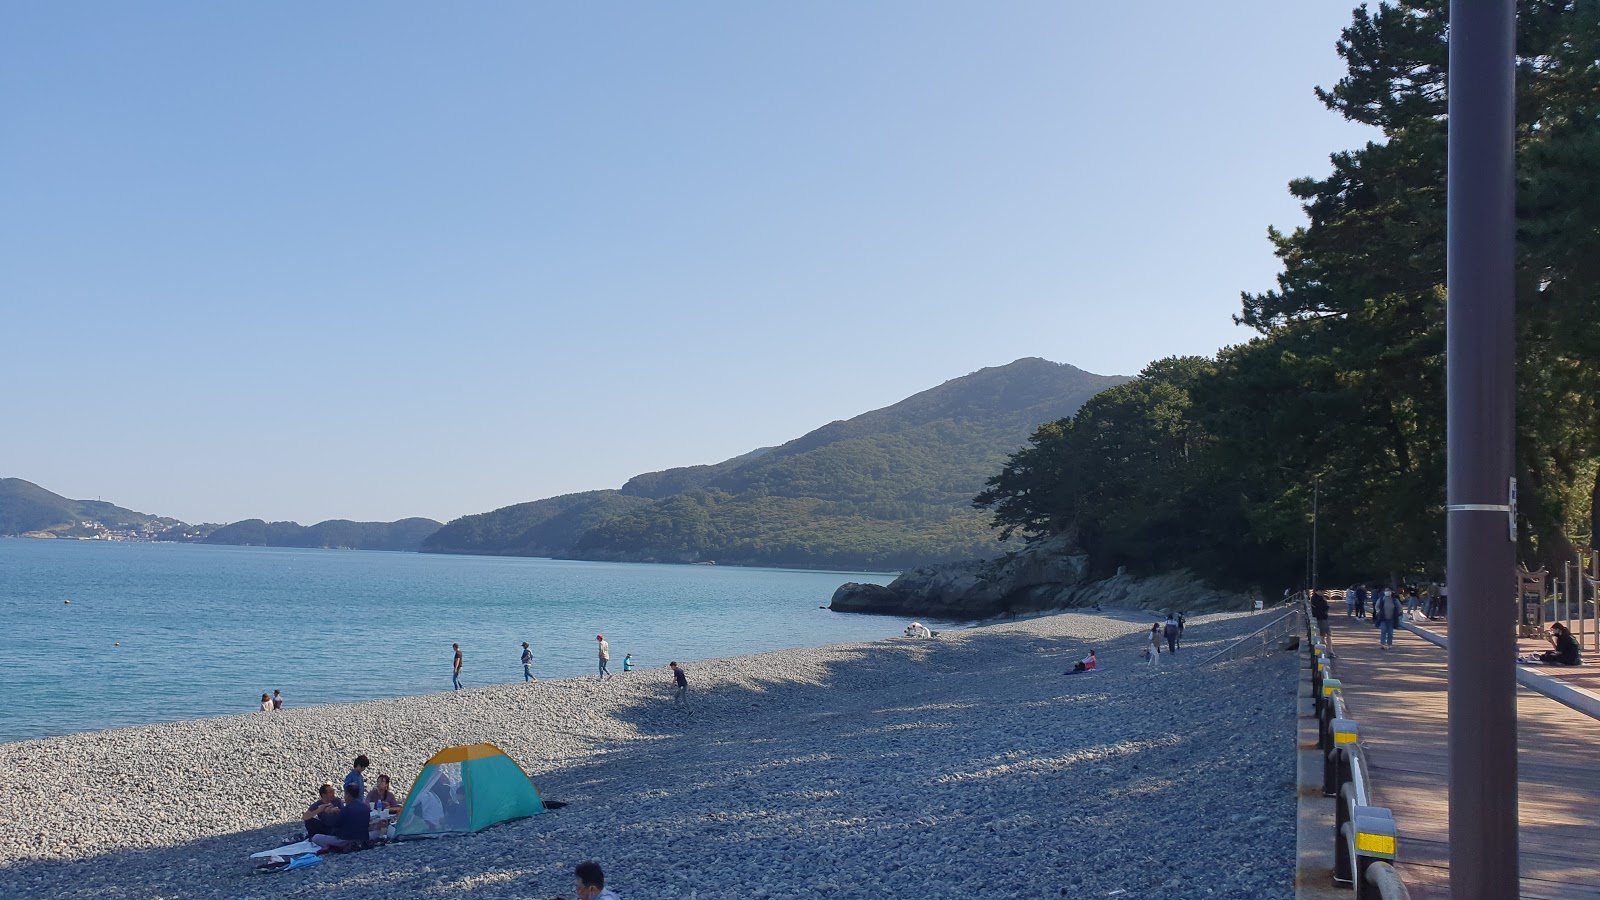 Fotografie cu Yeocha Beach - locul popular printre cunoscătorii de relaxare